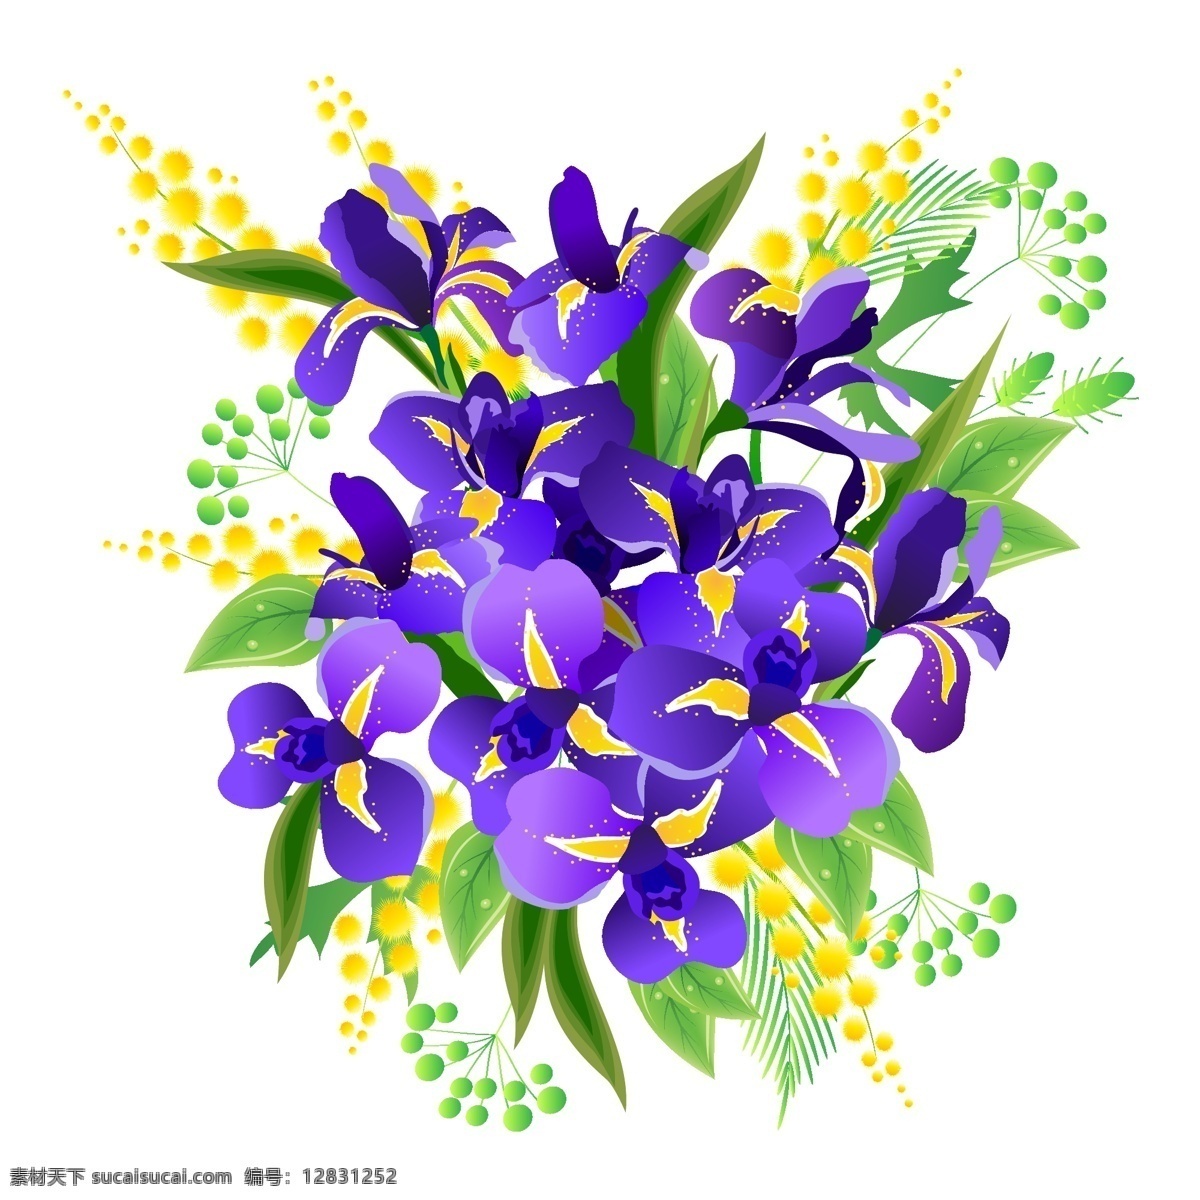 矢量图 服装图案 蝴蝶兰 花朵 写意花卉 植物 面料图库 服装设计 图案花型